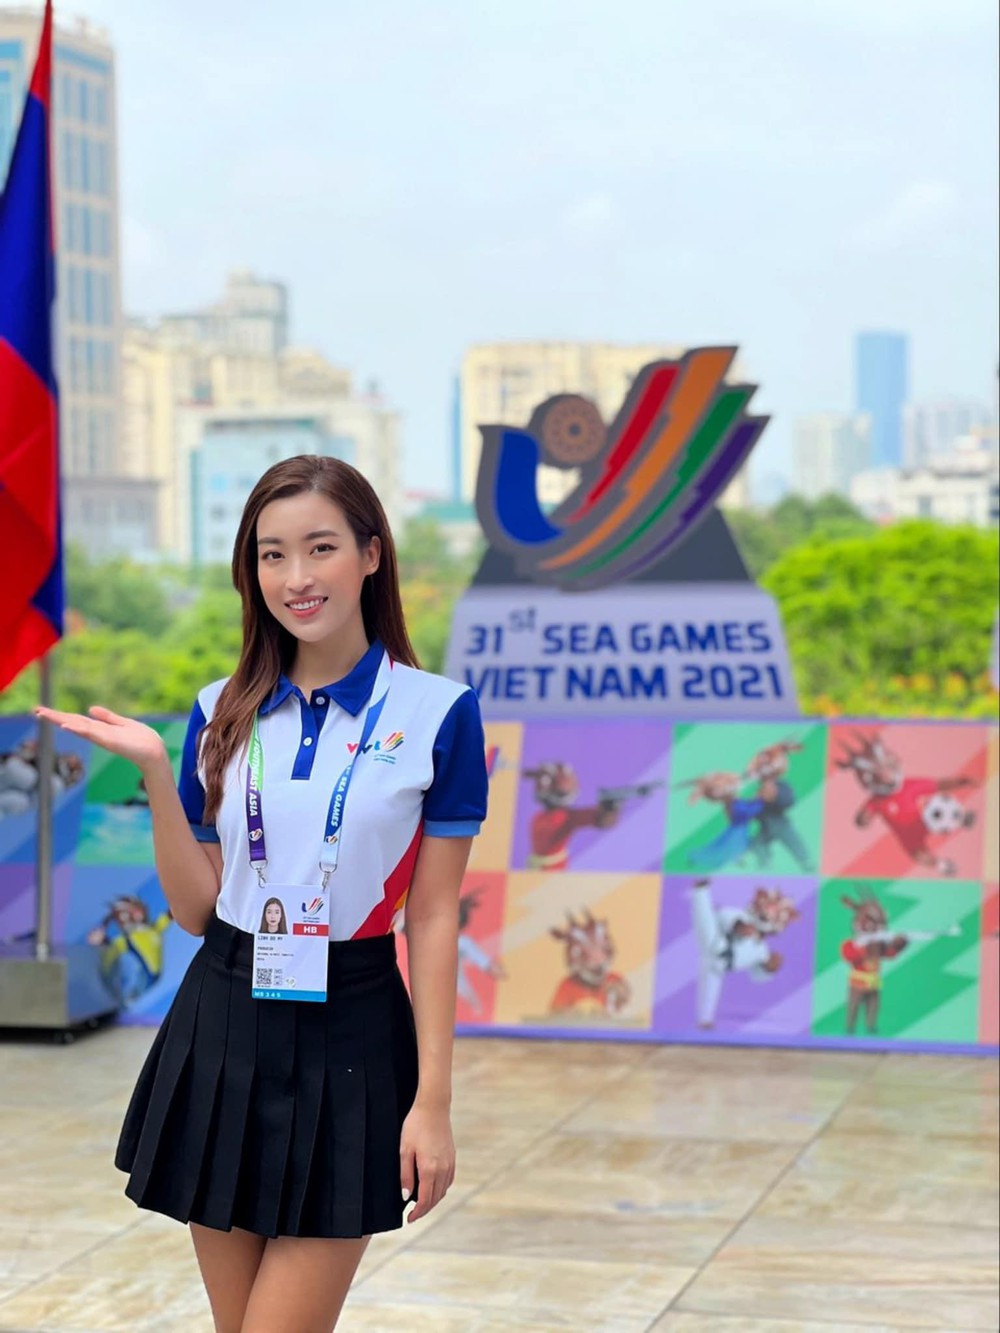 Hoa hậu Đỗ Mỹ Linh chia sẻ cảm xúc, áp lực khi dẫn trực tiếp bản tin về SEA Games 31 - Ảnh 2.